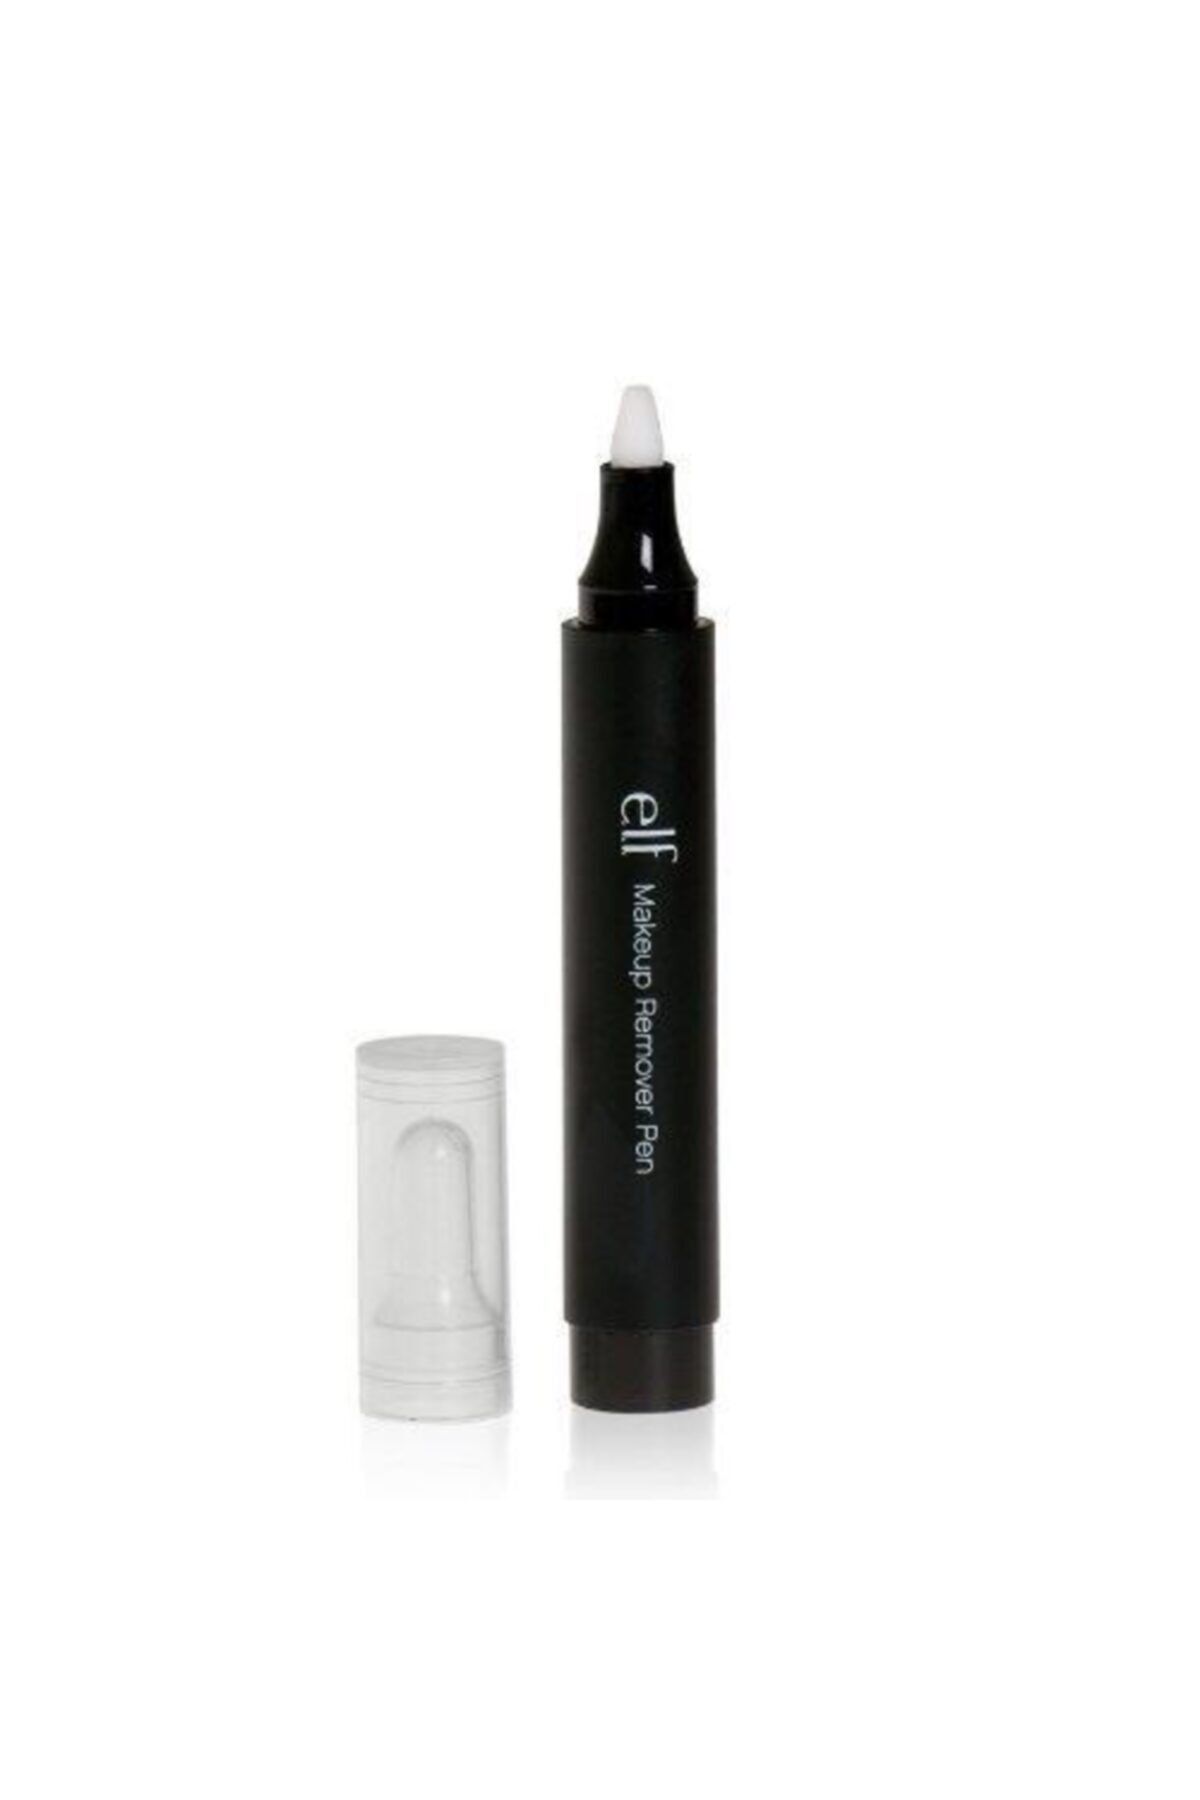 Prestige Makeup Eraser Pen Pmr 01 Clear